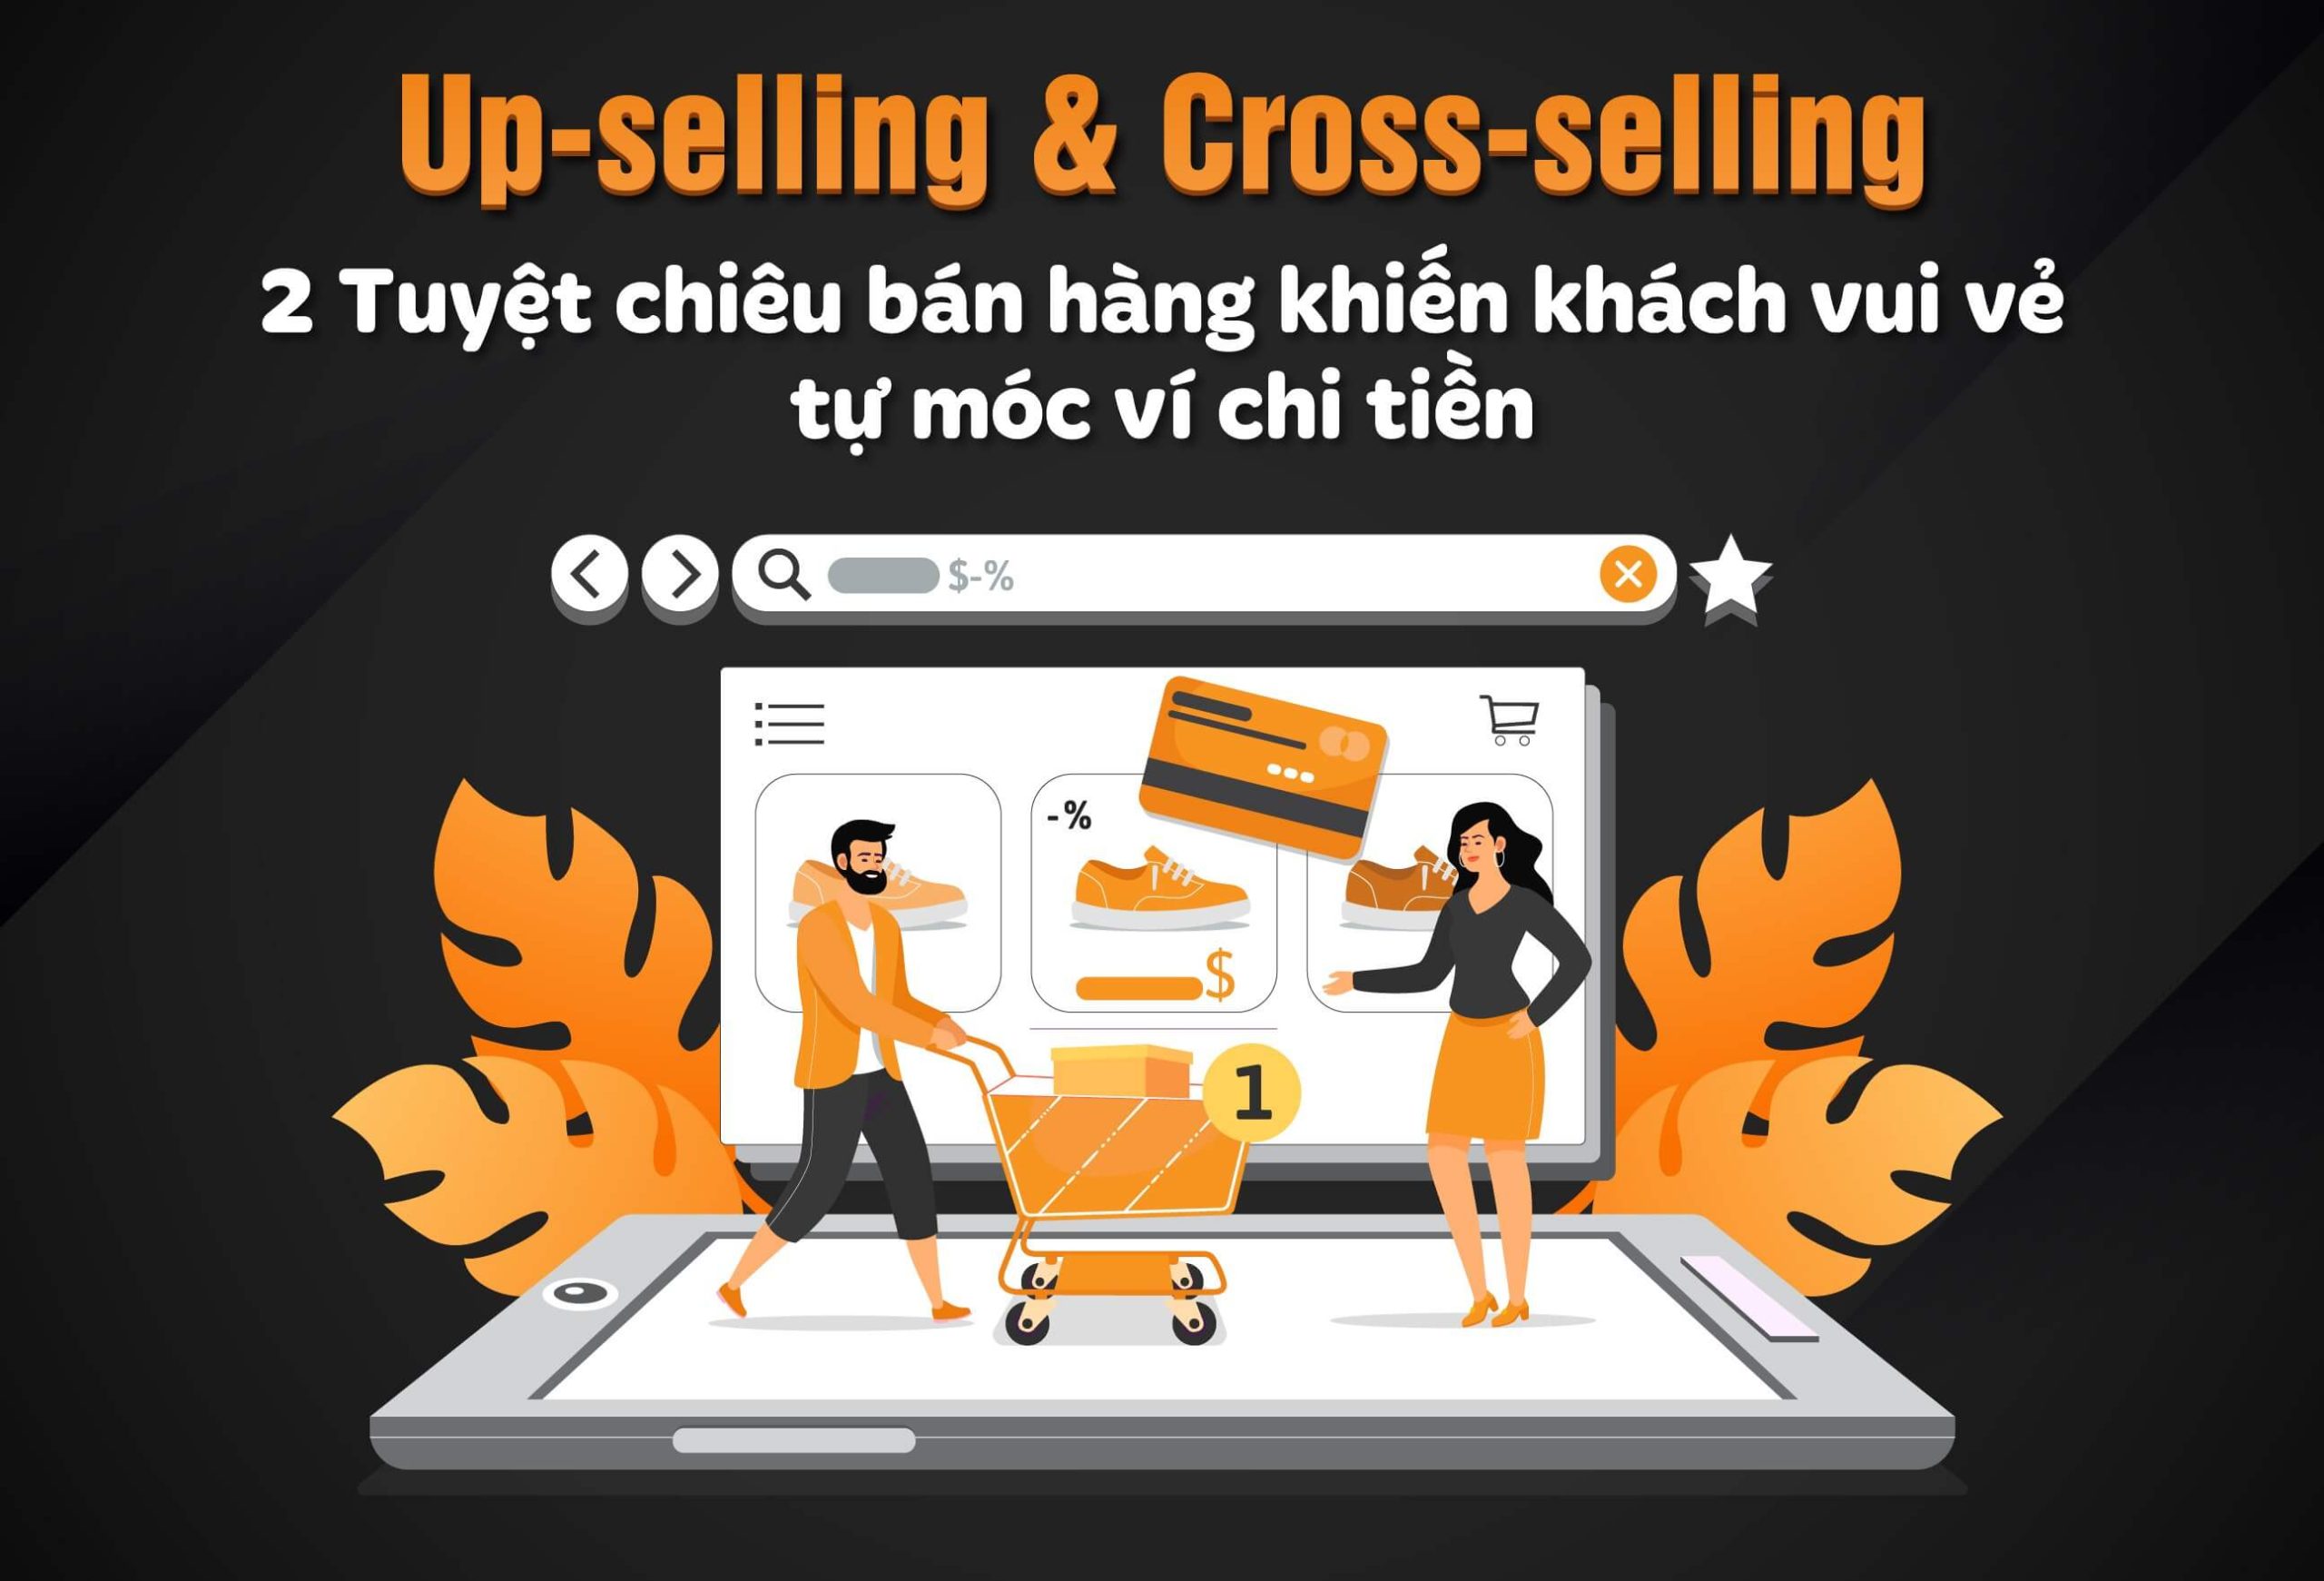 Up-selling & Cross-selling - 2 Tuyệt chiêu bán hàng khiến khách vui vẻ tự móc ví chi tiền